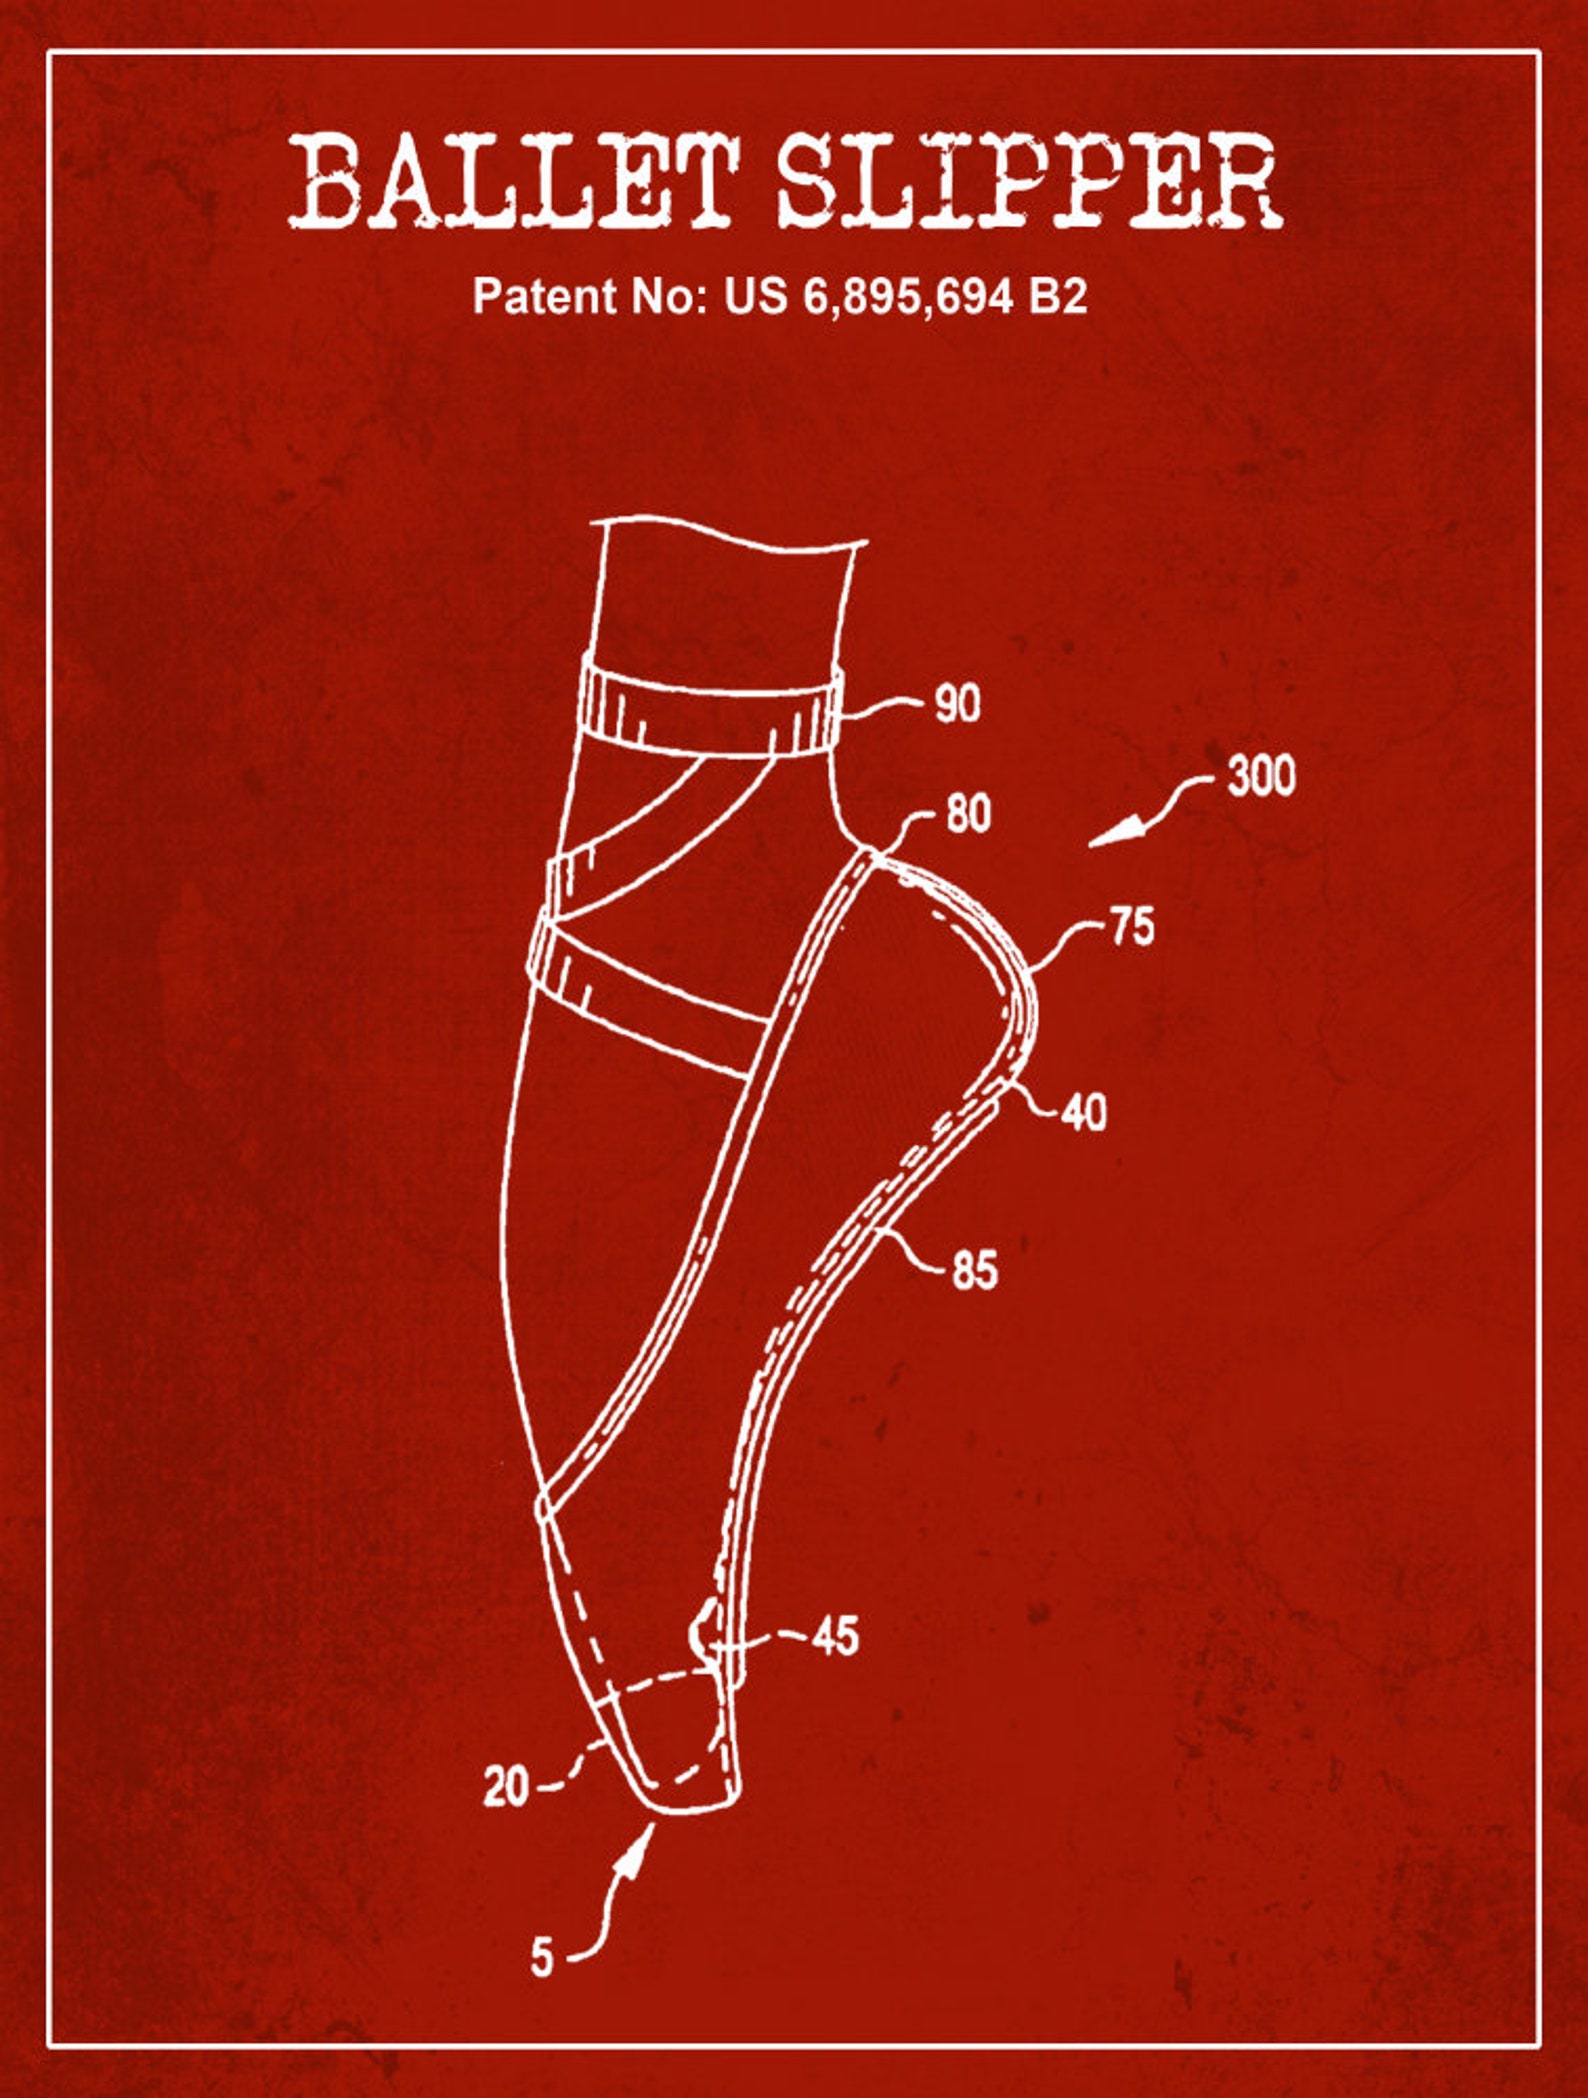 ballet slipper dance shoe patent, pointe shoe blueprint, ballerina flats, dance studio, gift for daughter, dance art print, toe